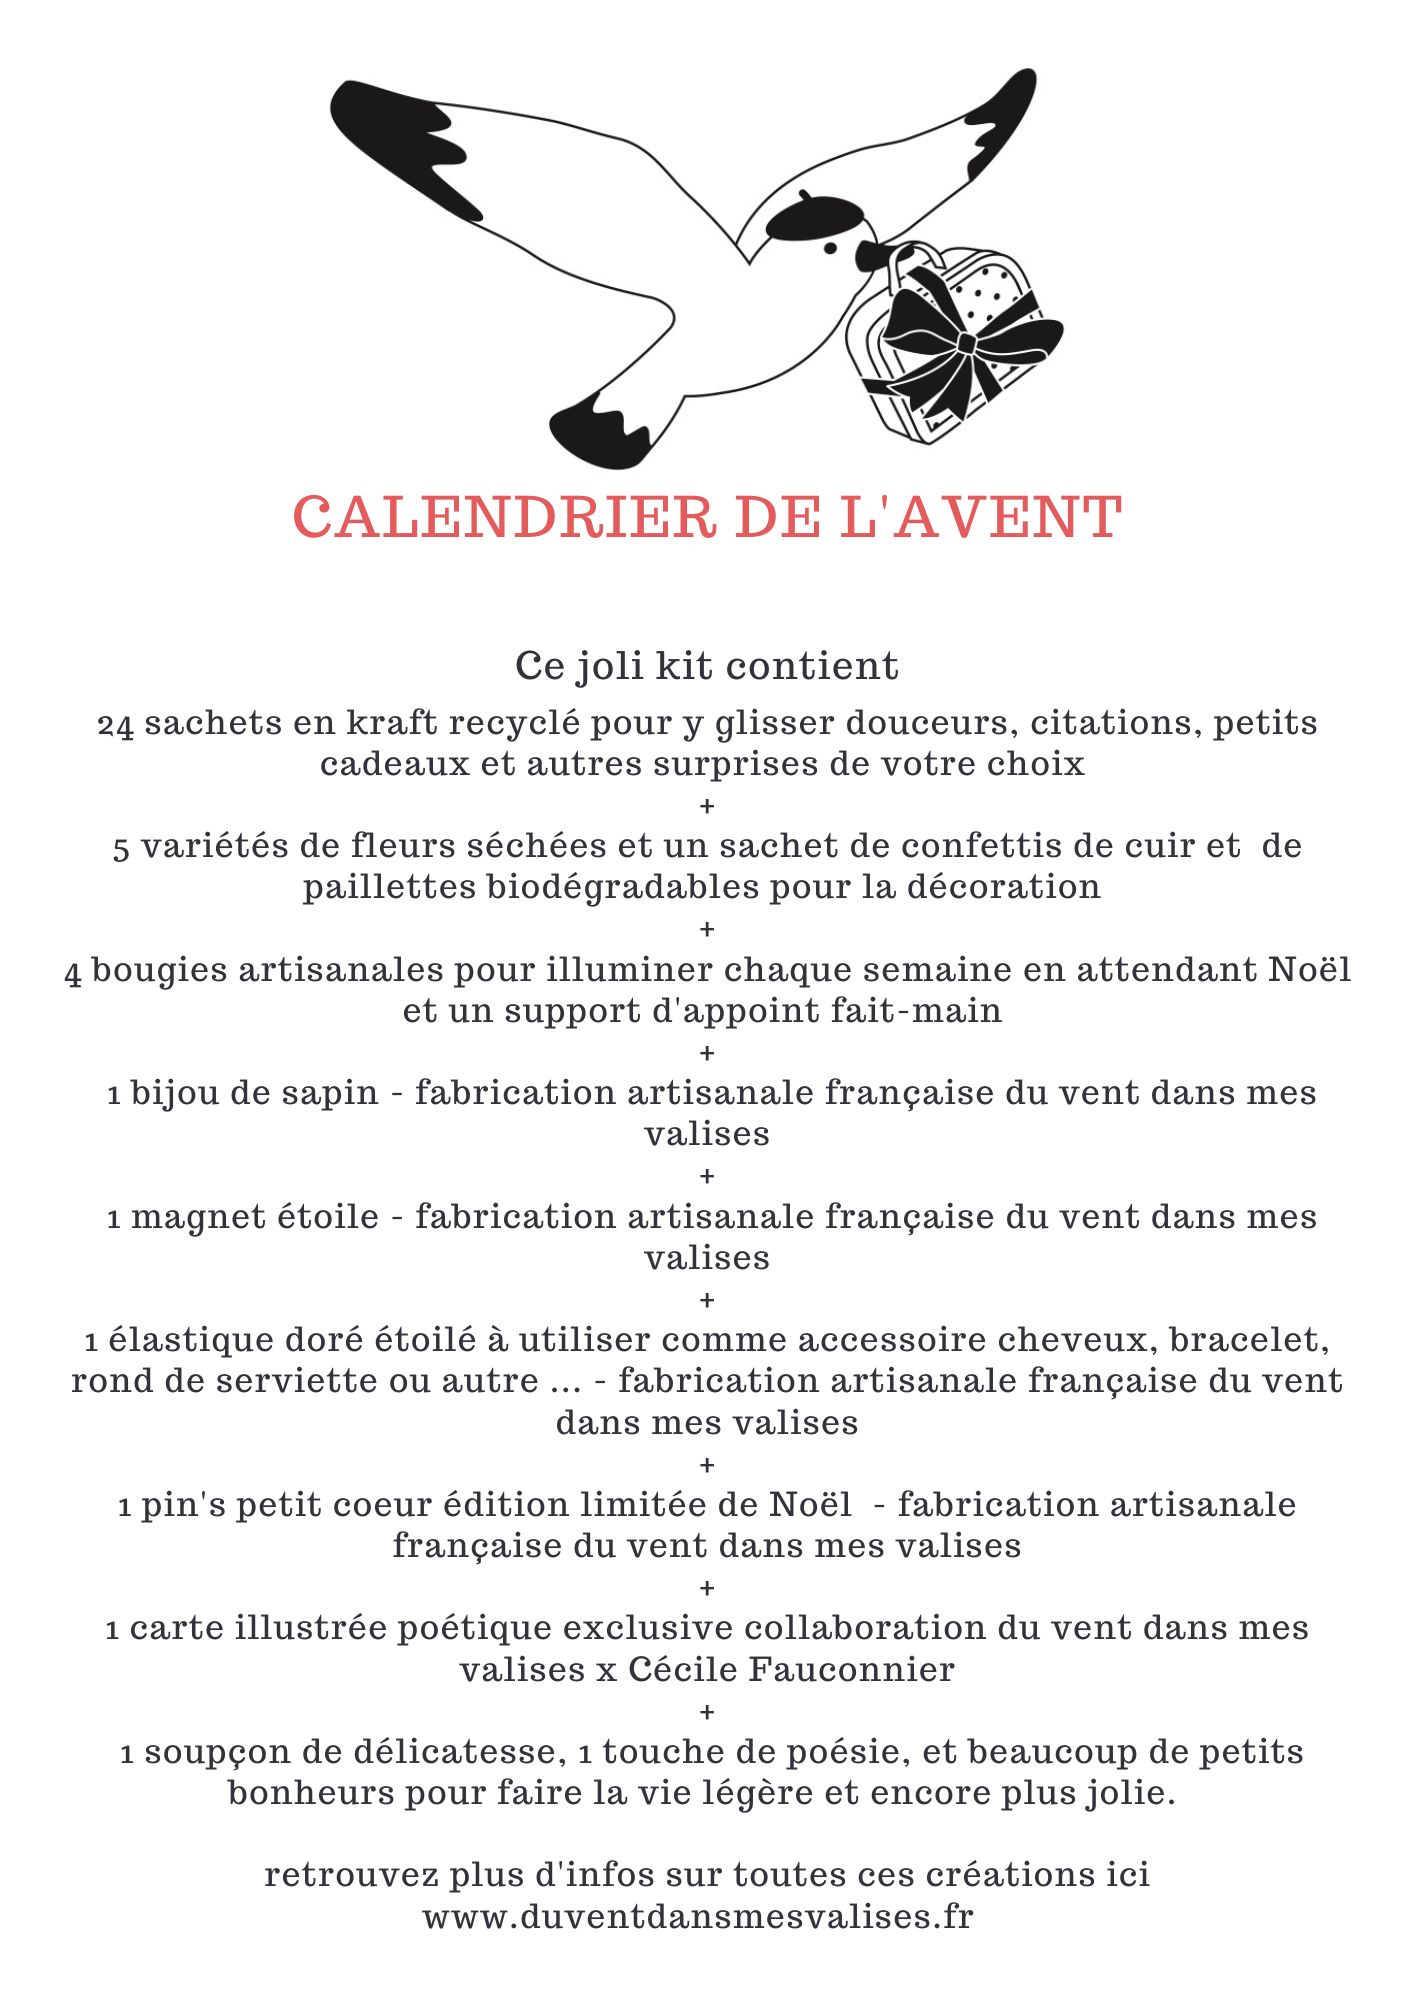 Descriptif kit diy calendrier de l'avent traditionnel made in France © du vent dans mes valises